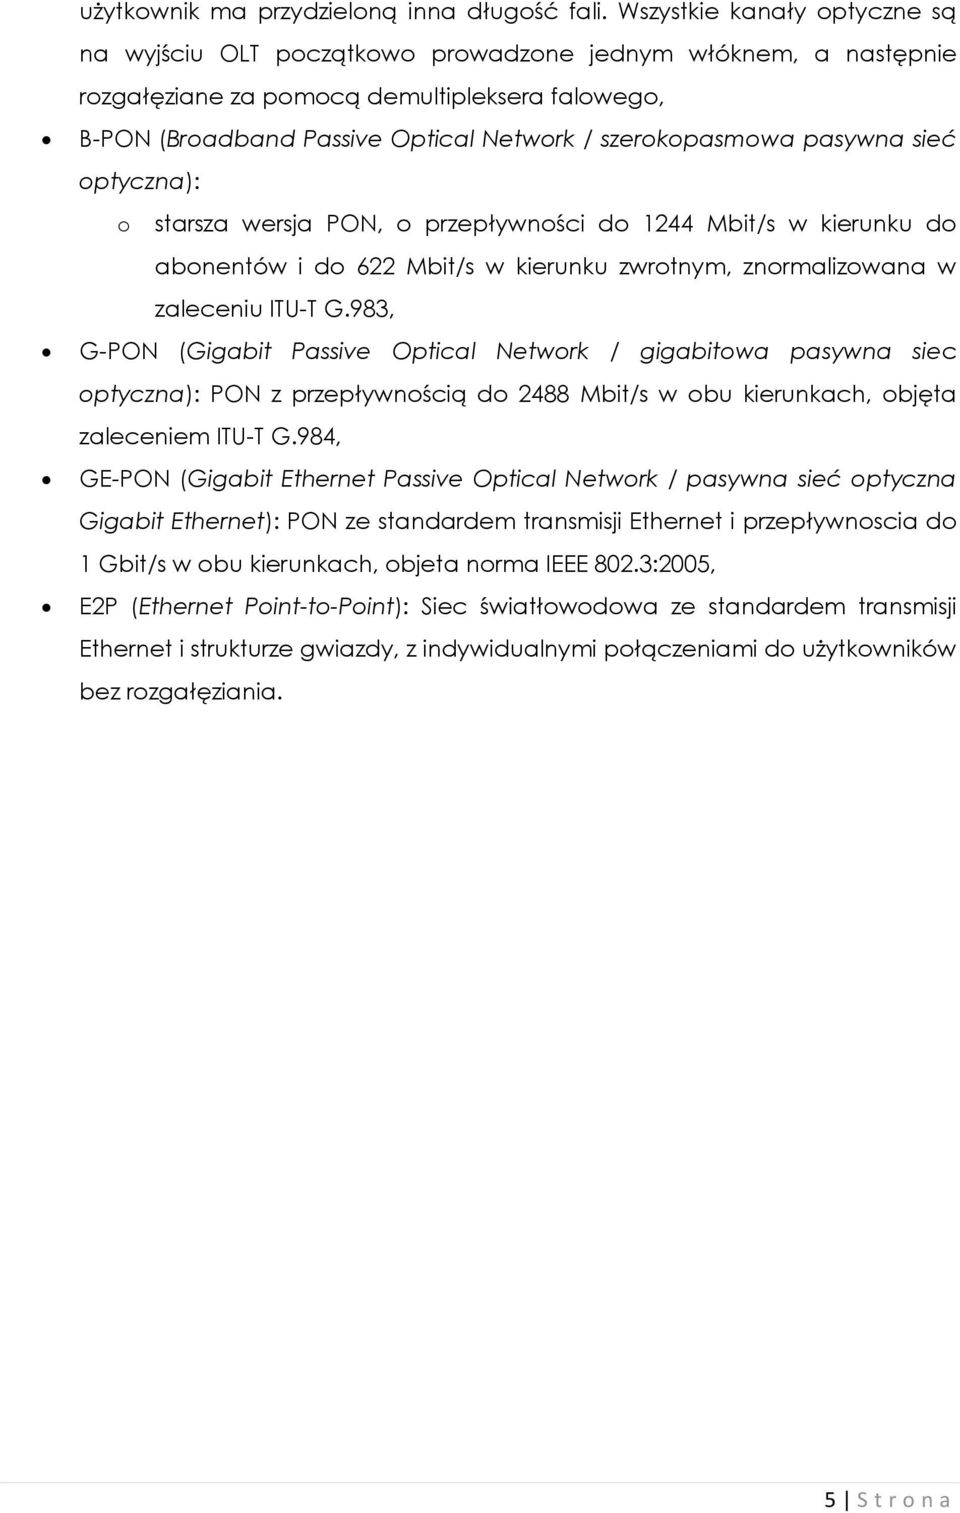 szerokopasmowa pasywna sieć optyczna): o starsza wersja PON, o przepływności do 1244 Mbit/s w kierunku do abonentów i do 622 Mbit/s w kierunku zwrotnym, znormalizowana w zaleceniu ITU-T G.